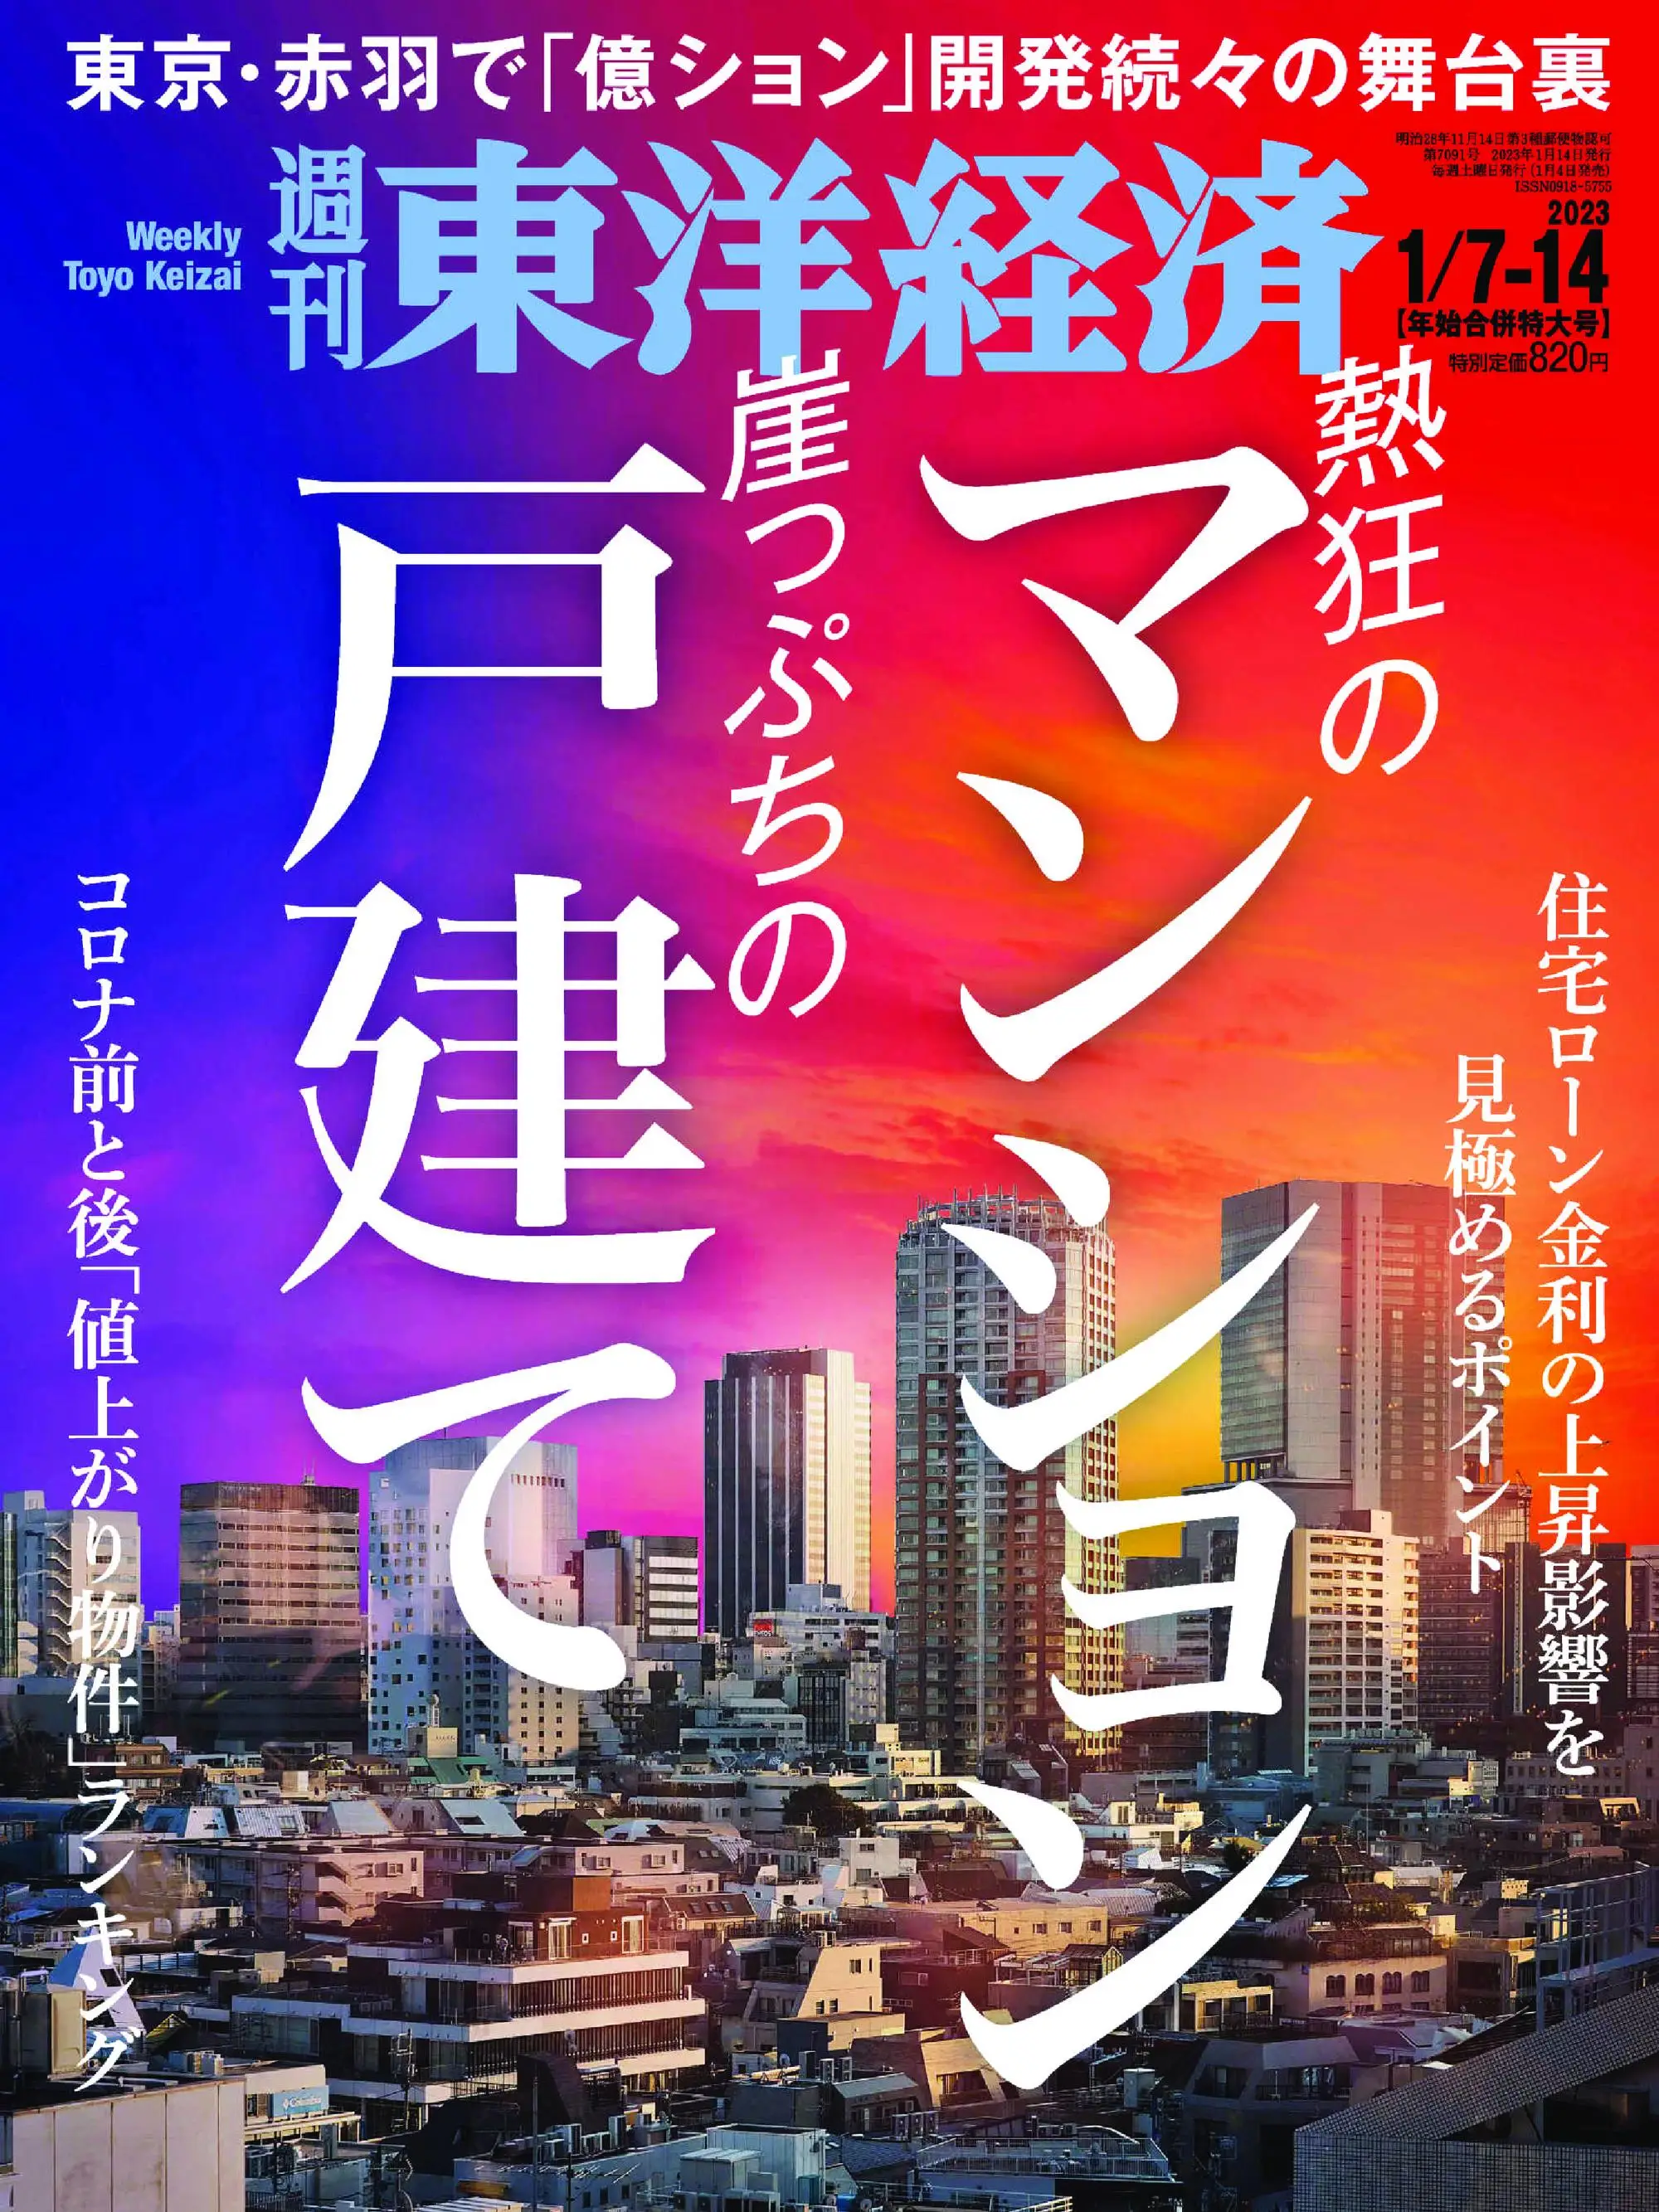 Weekly Toyo Keizai 週刊東洋経済 2023年1月04日 